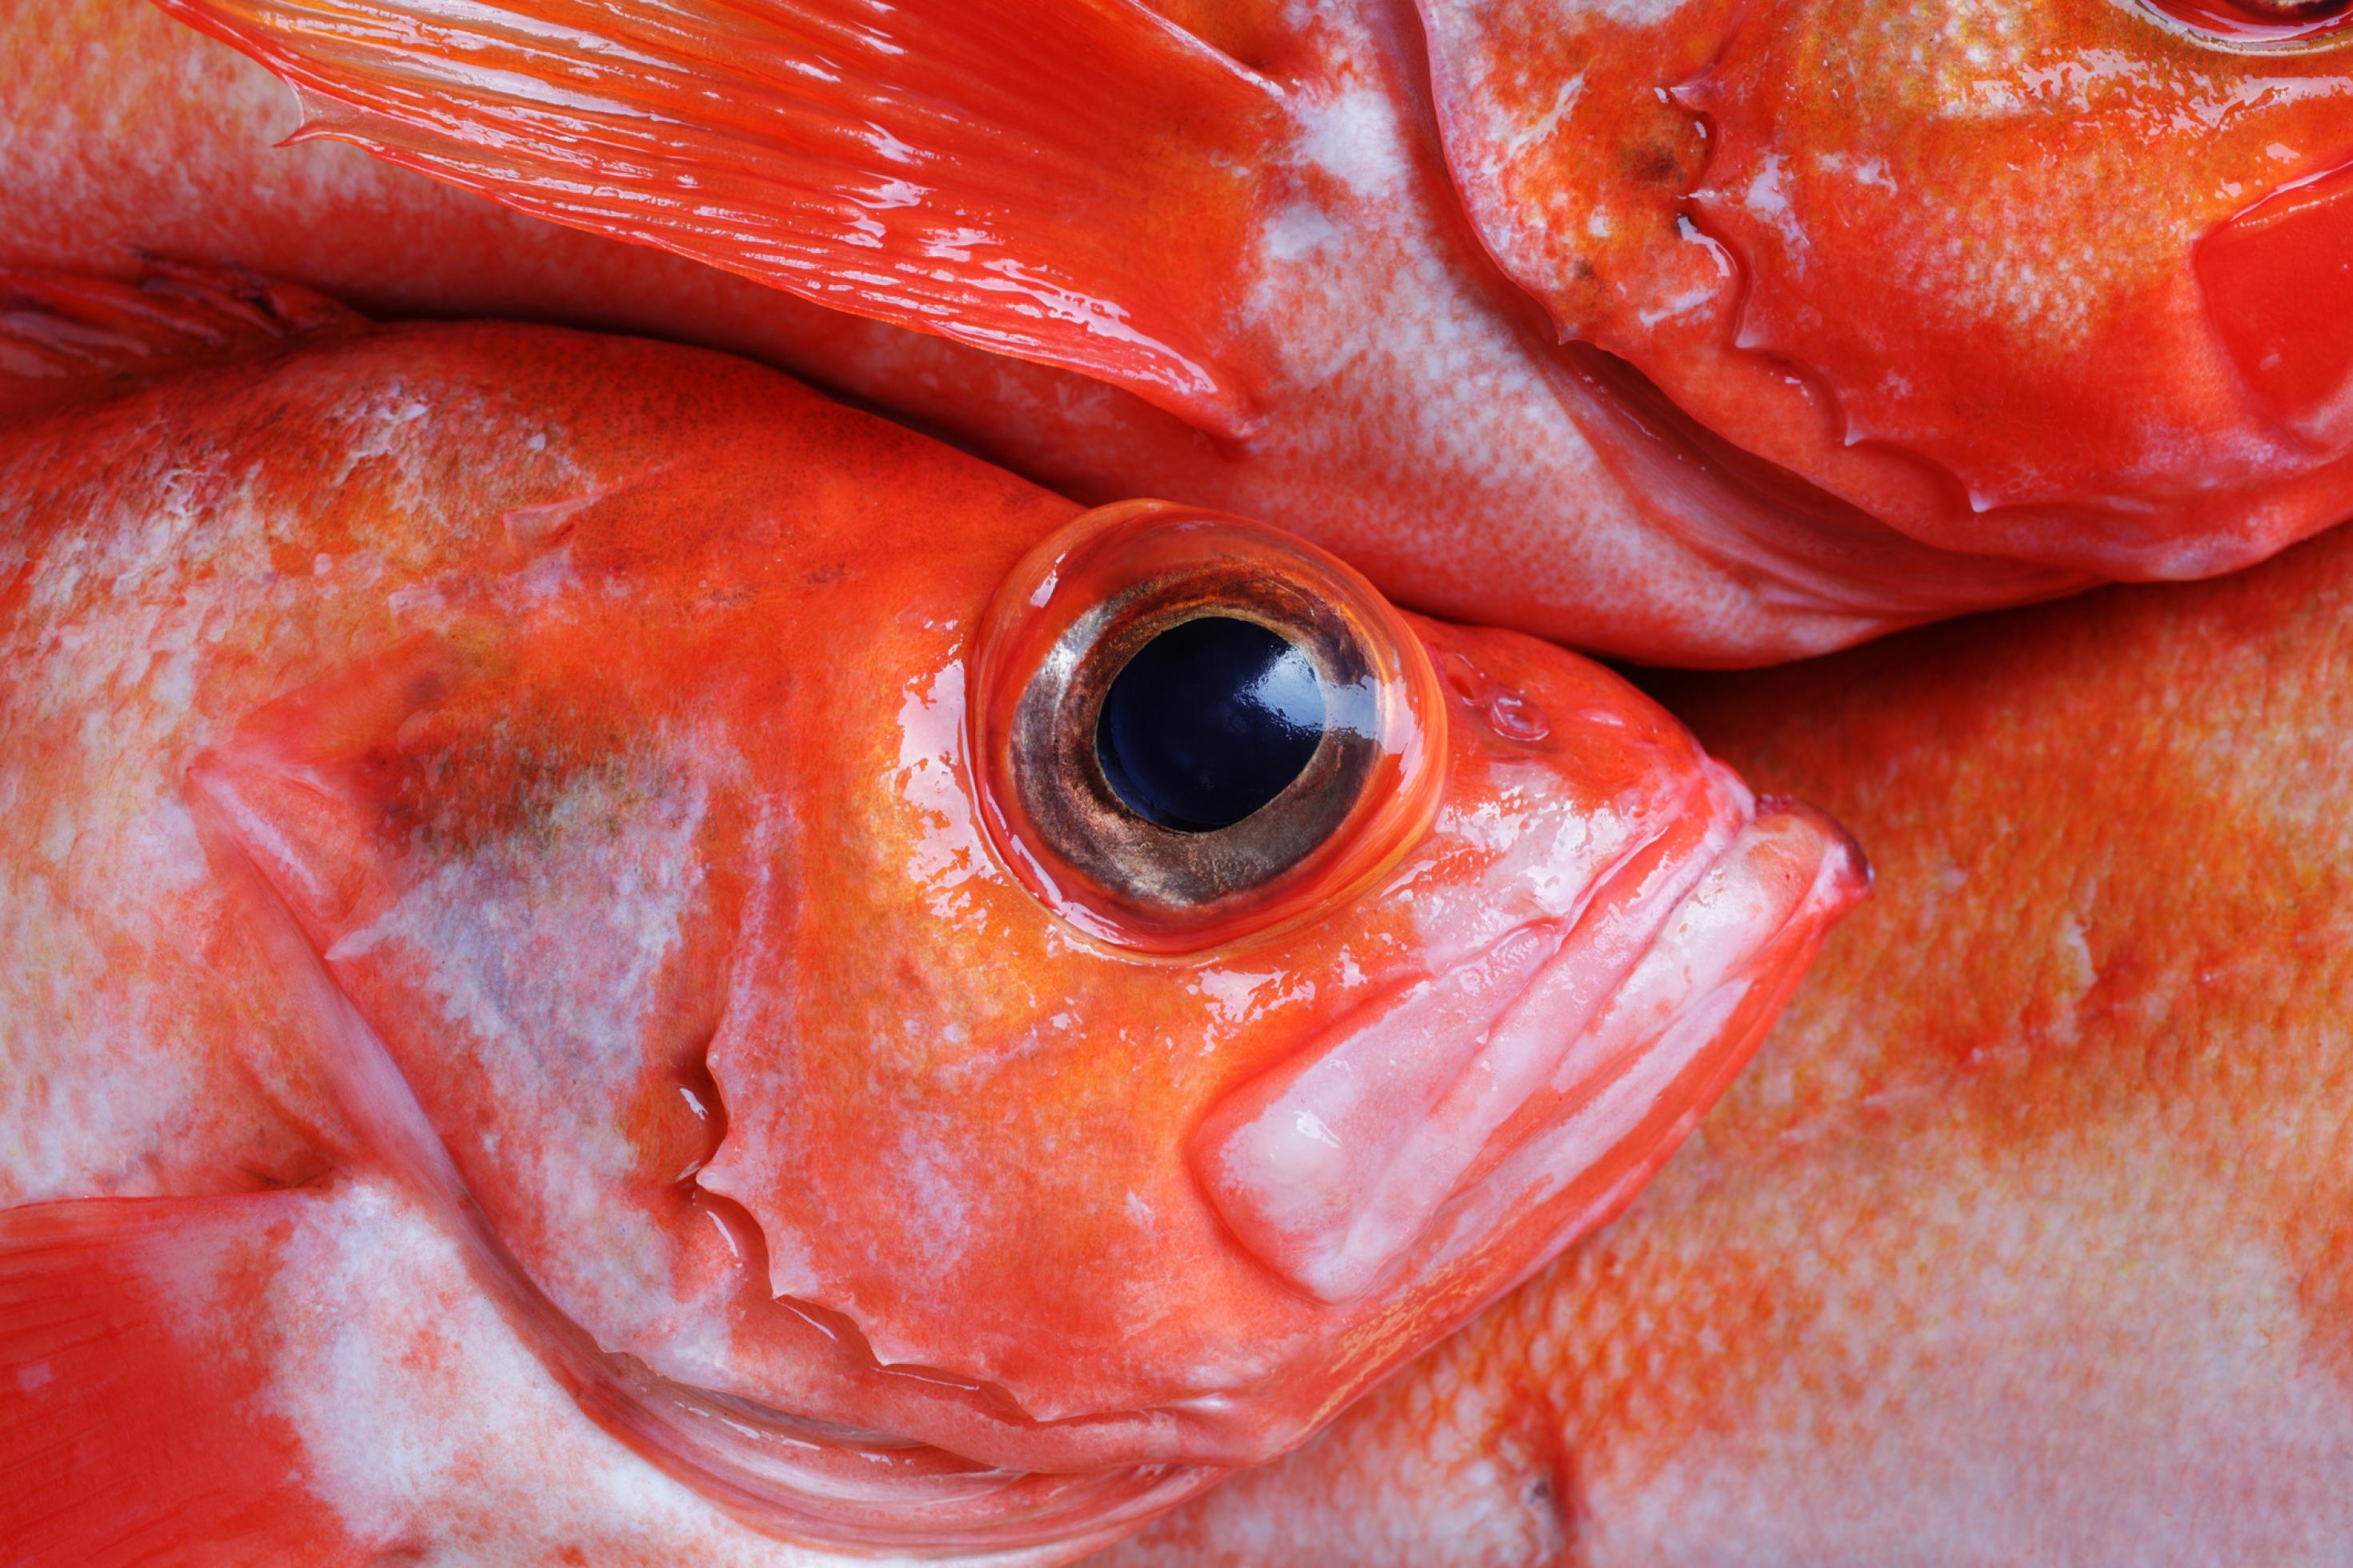 Kopf eines toten Rotbarschs mit großen Auge, Im Hintergrund sind weitere rote Fische dieser Art zu erkennen.